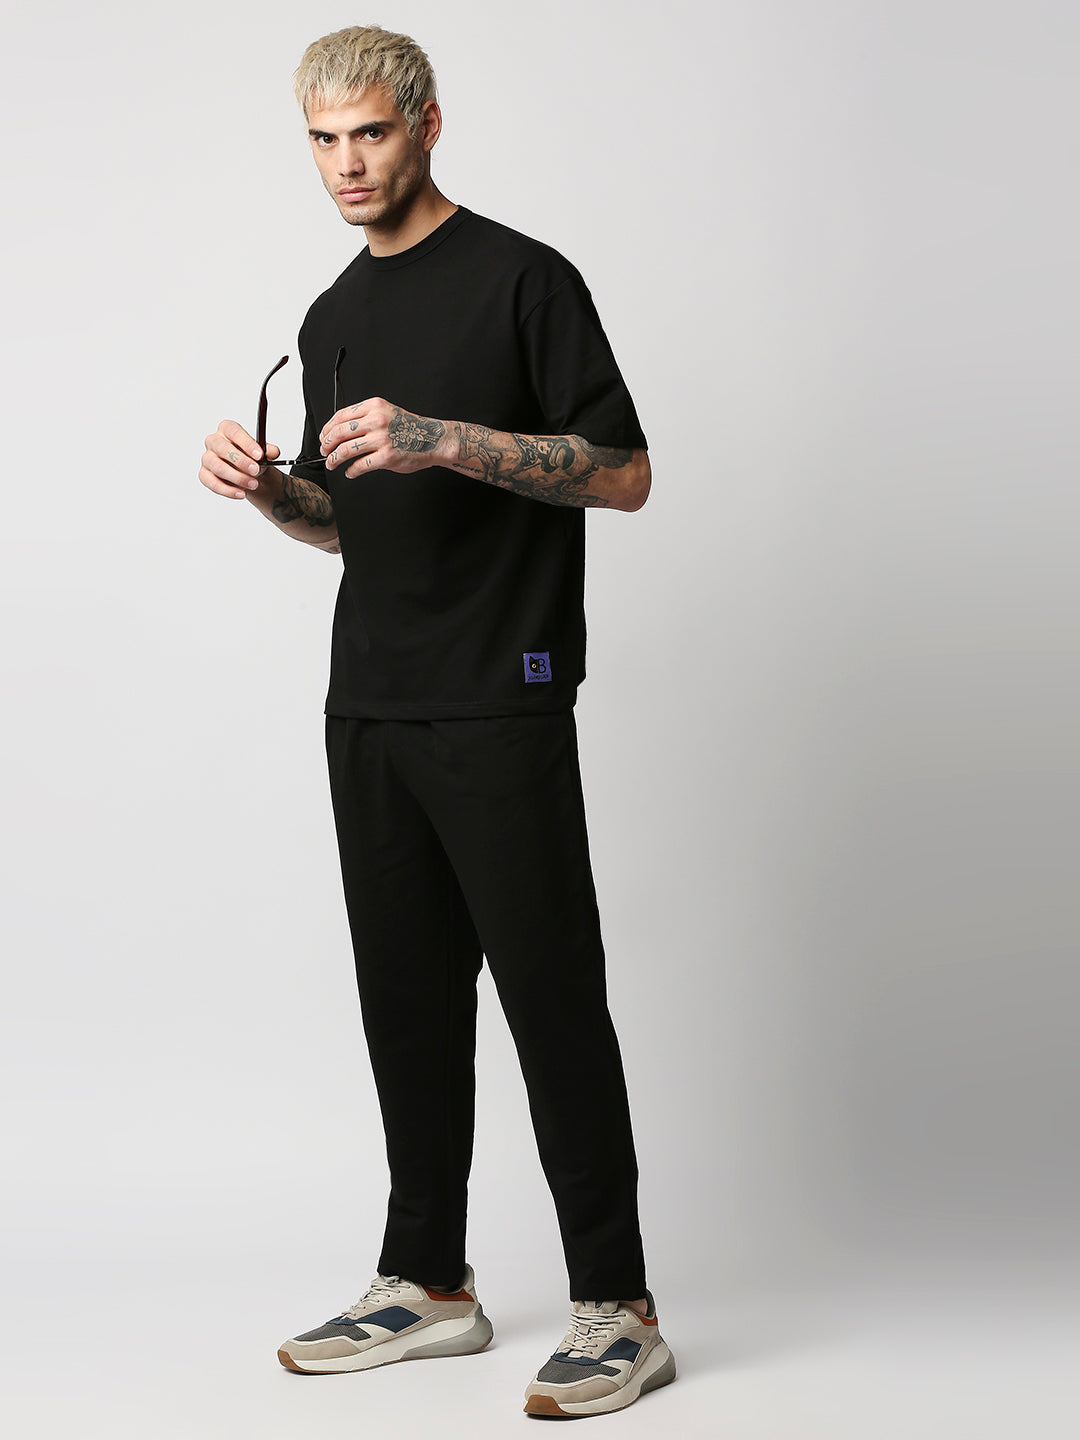 Buy BLAMBLACK Men Round neck Co-ordinates Set Black Color Solid Half sleeves